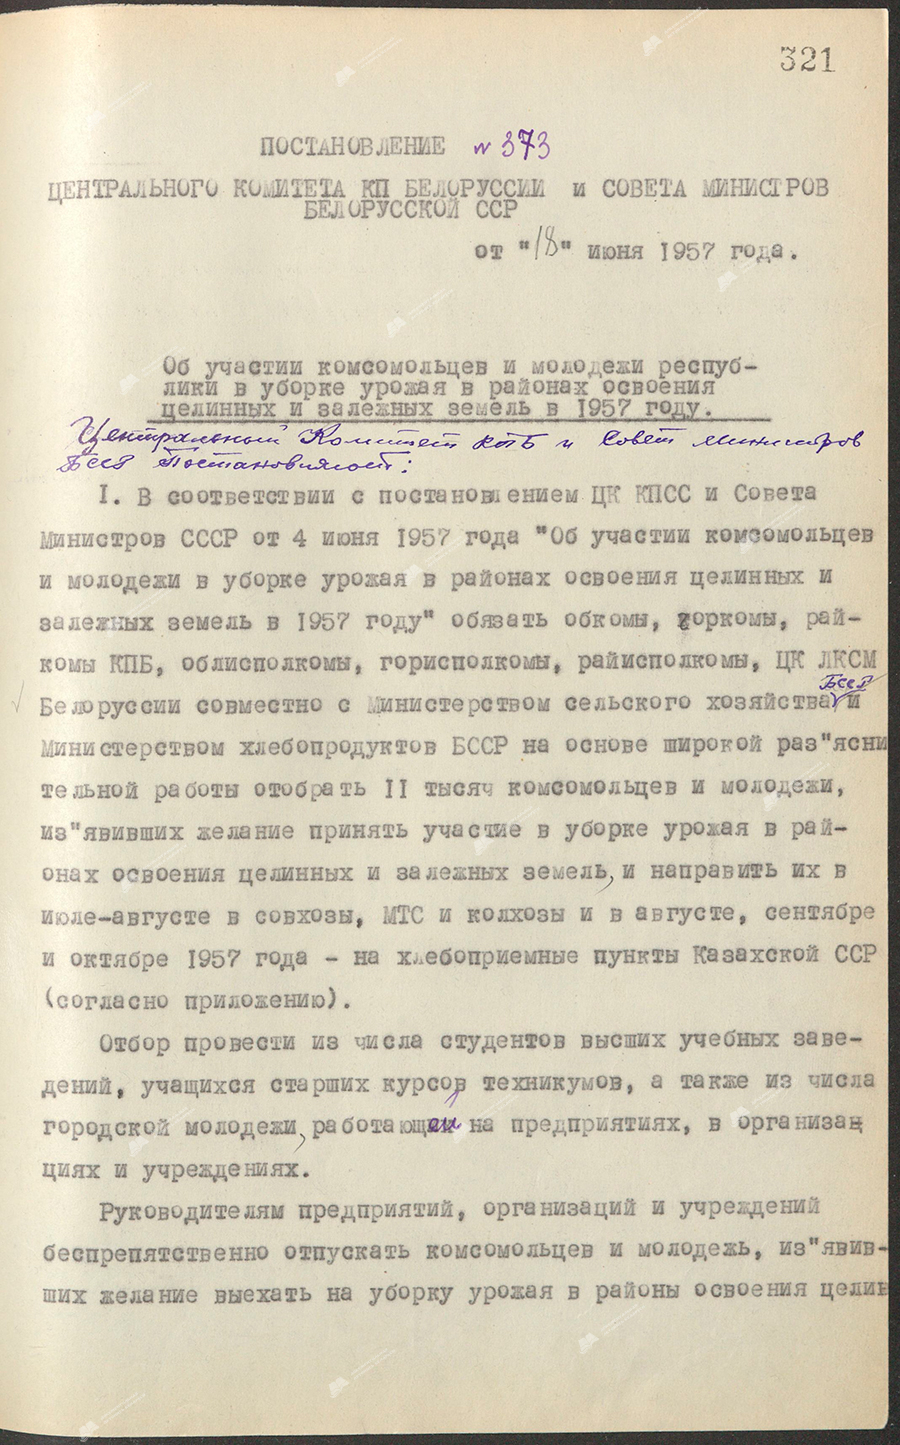 Beschluss Nr. 373 des Zentralkomitees des KP von Belarus und des Ministerrates der belarussischen SSR «Über die Teilnahme der Komsomol und der Jugend der Republik an der Ernte in den Gebieten der Erschließung von reinen und einlagigen Gebieten im Jahr 1957»-с. 0